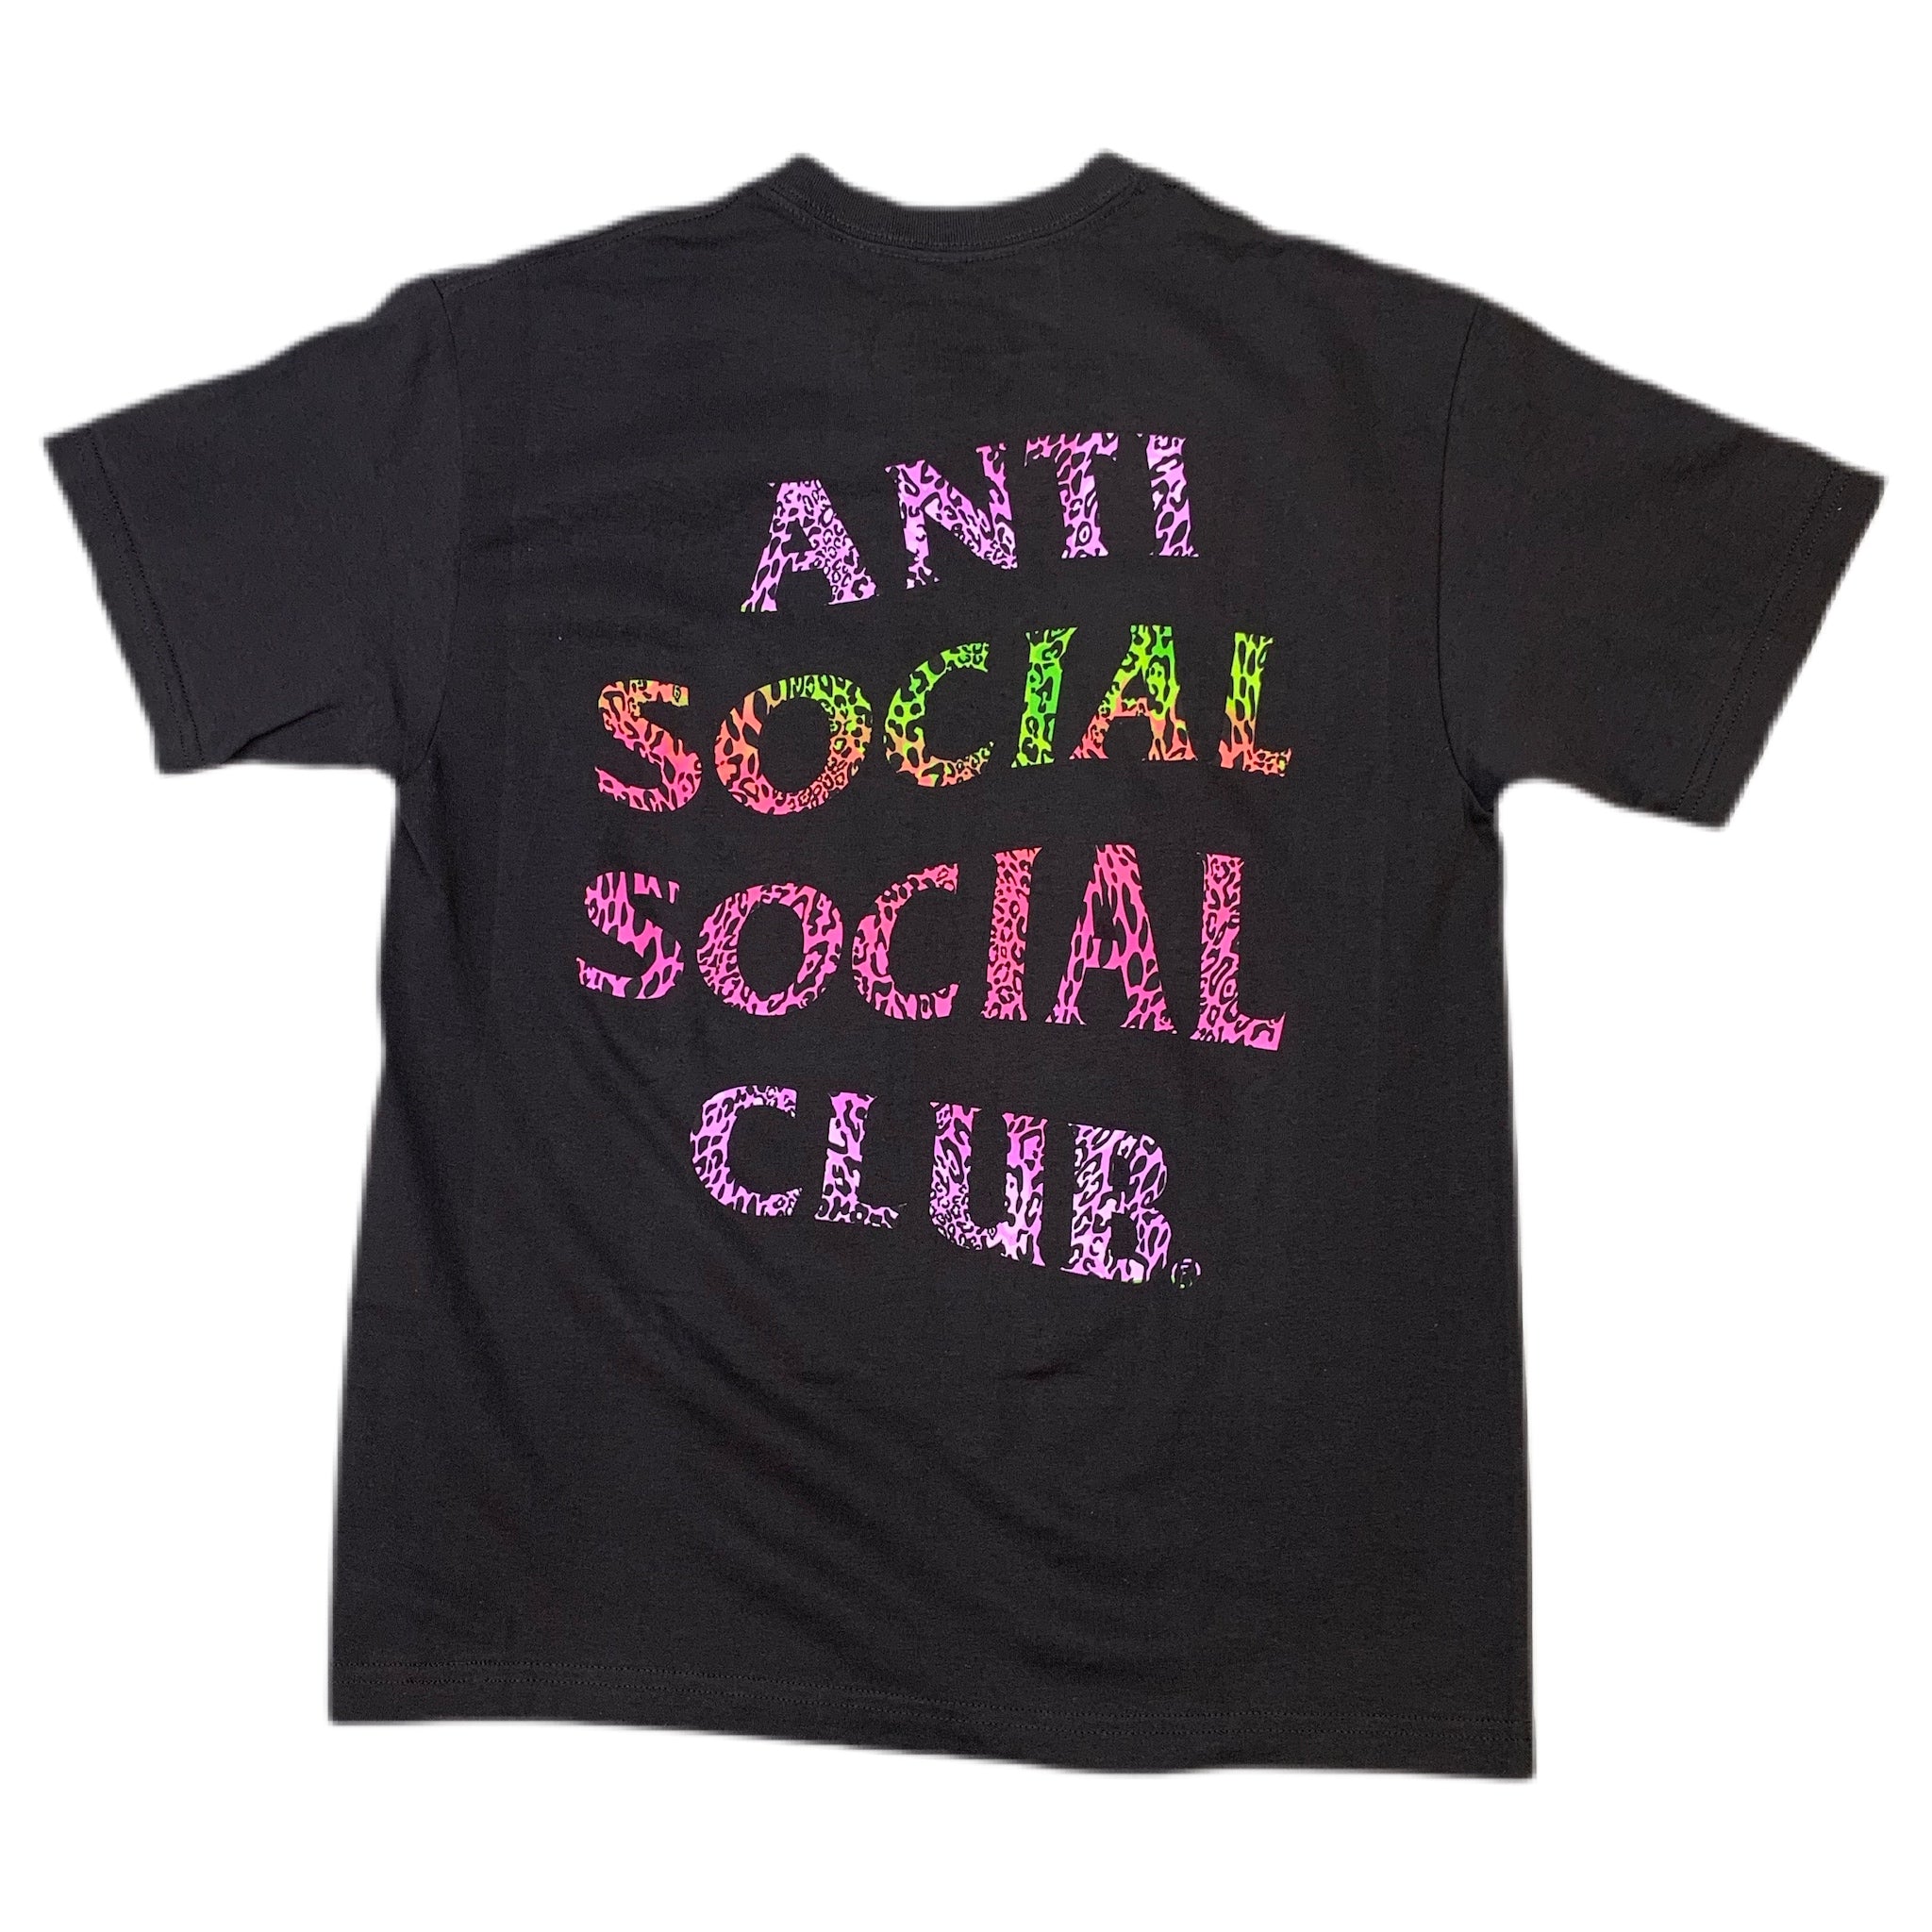 Anti Social Social Club "ASSCLUBTRONIC" Shirt Black - Black Graphic Shirt